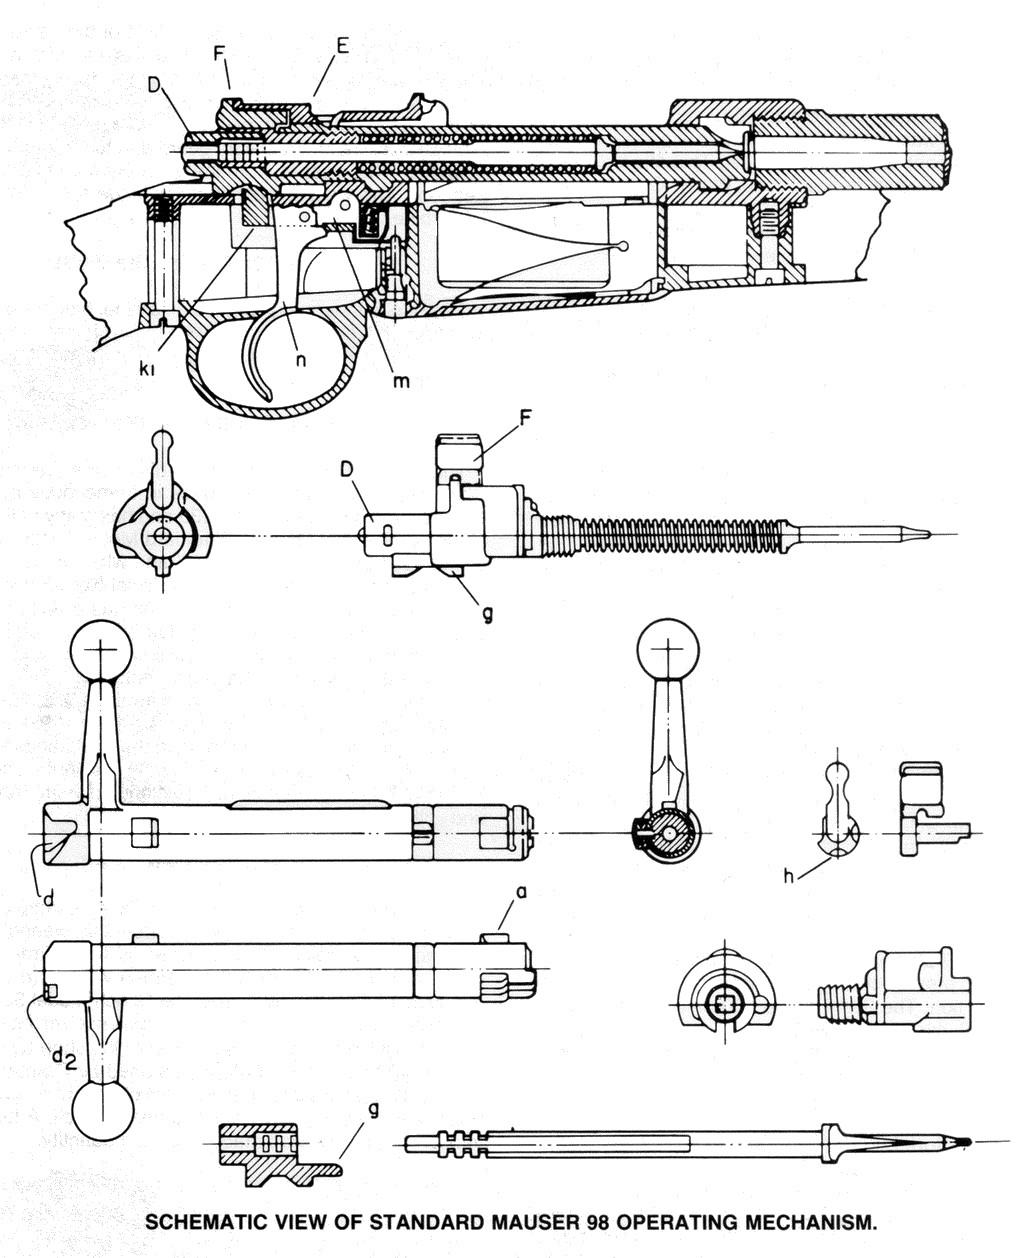 m1903春田狙击步枪和kar98k毛瑟步枪相比,哪一种更实用? 